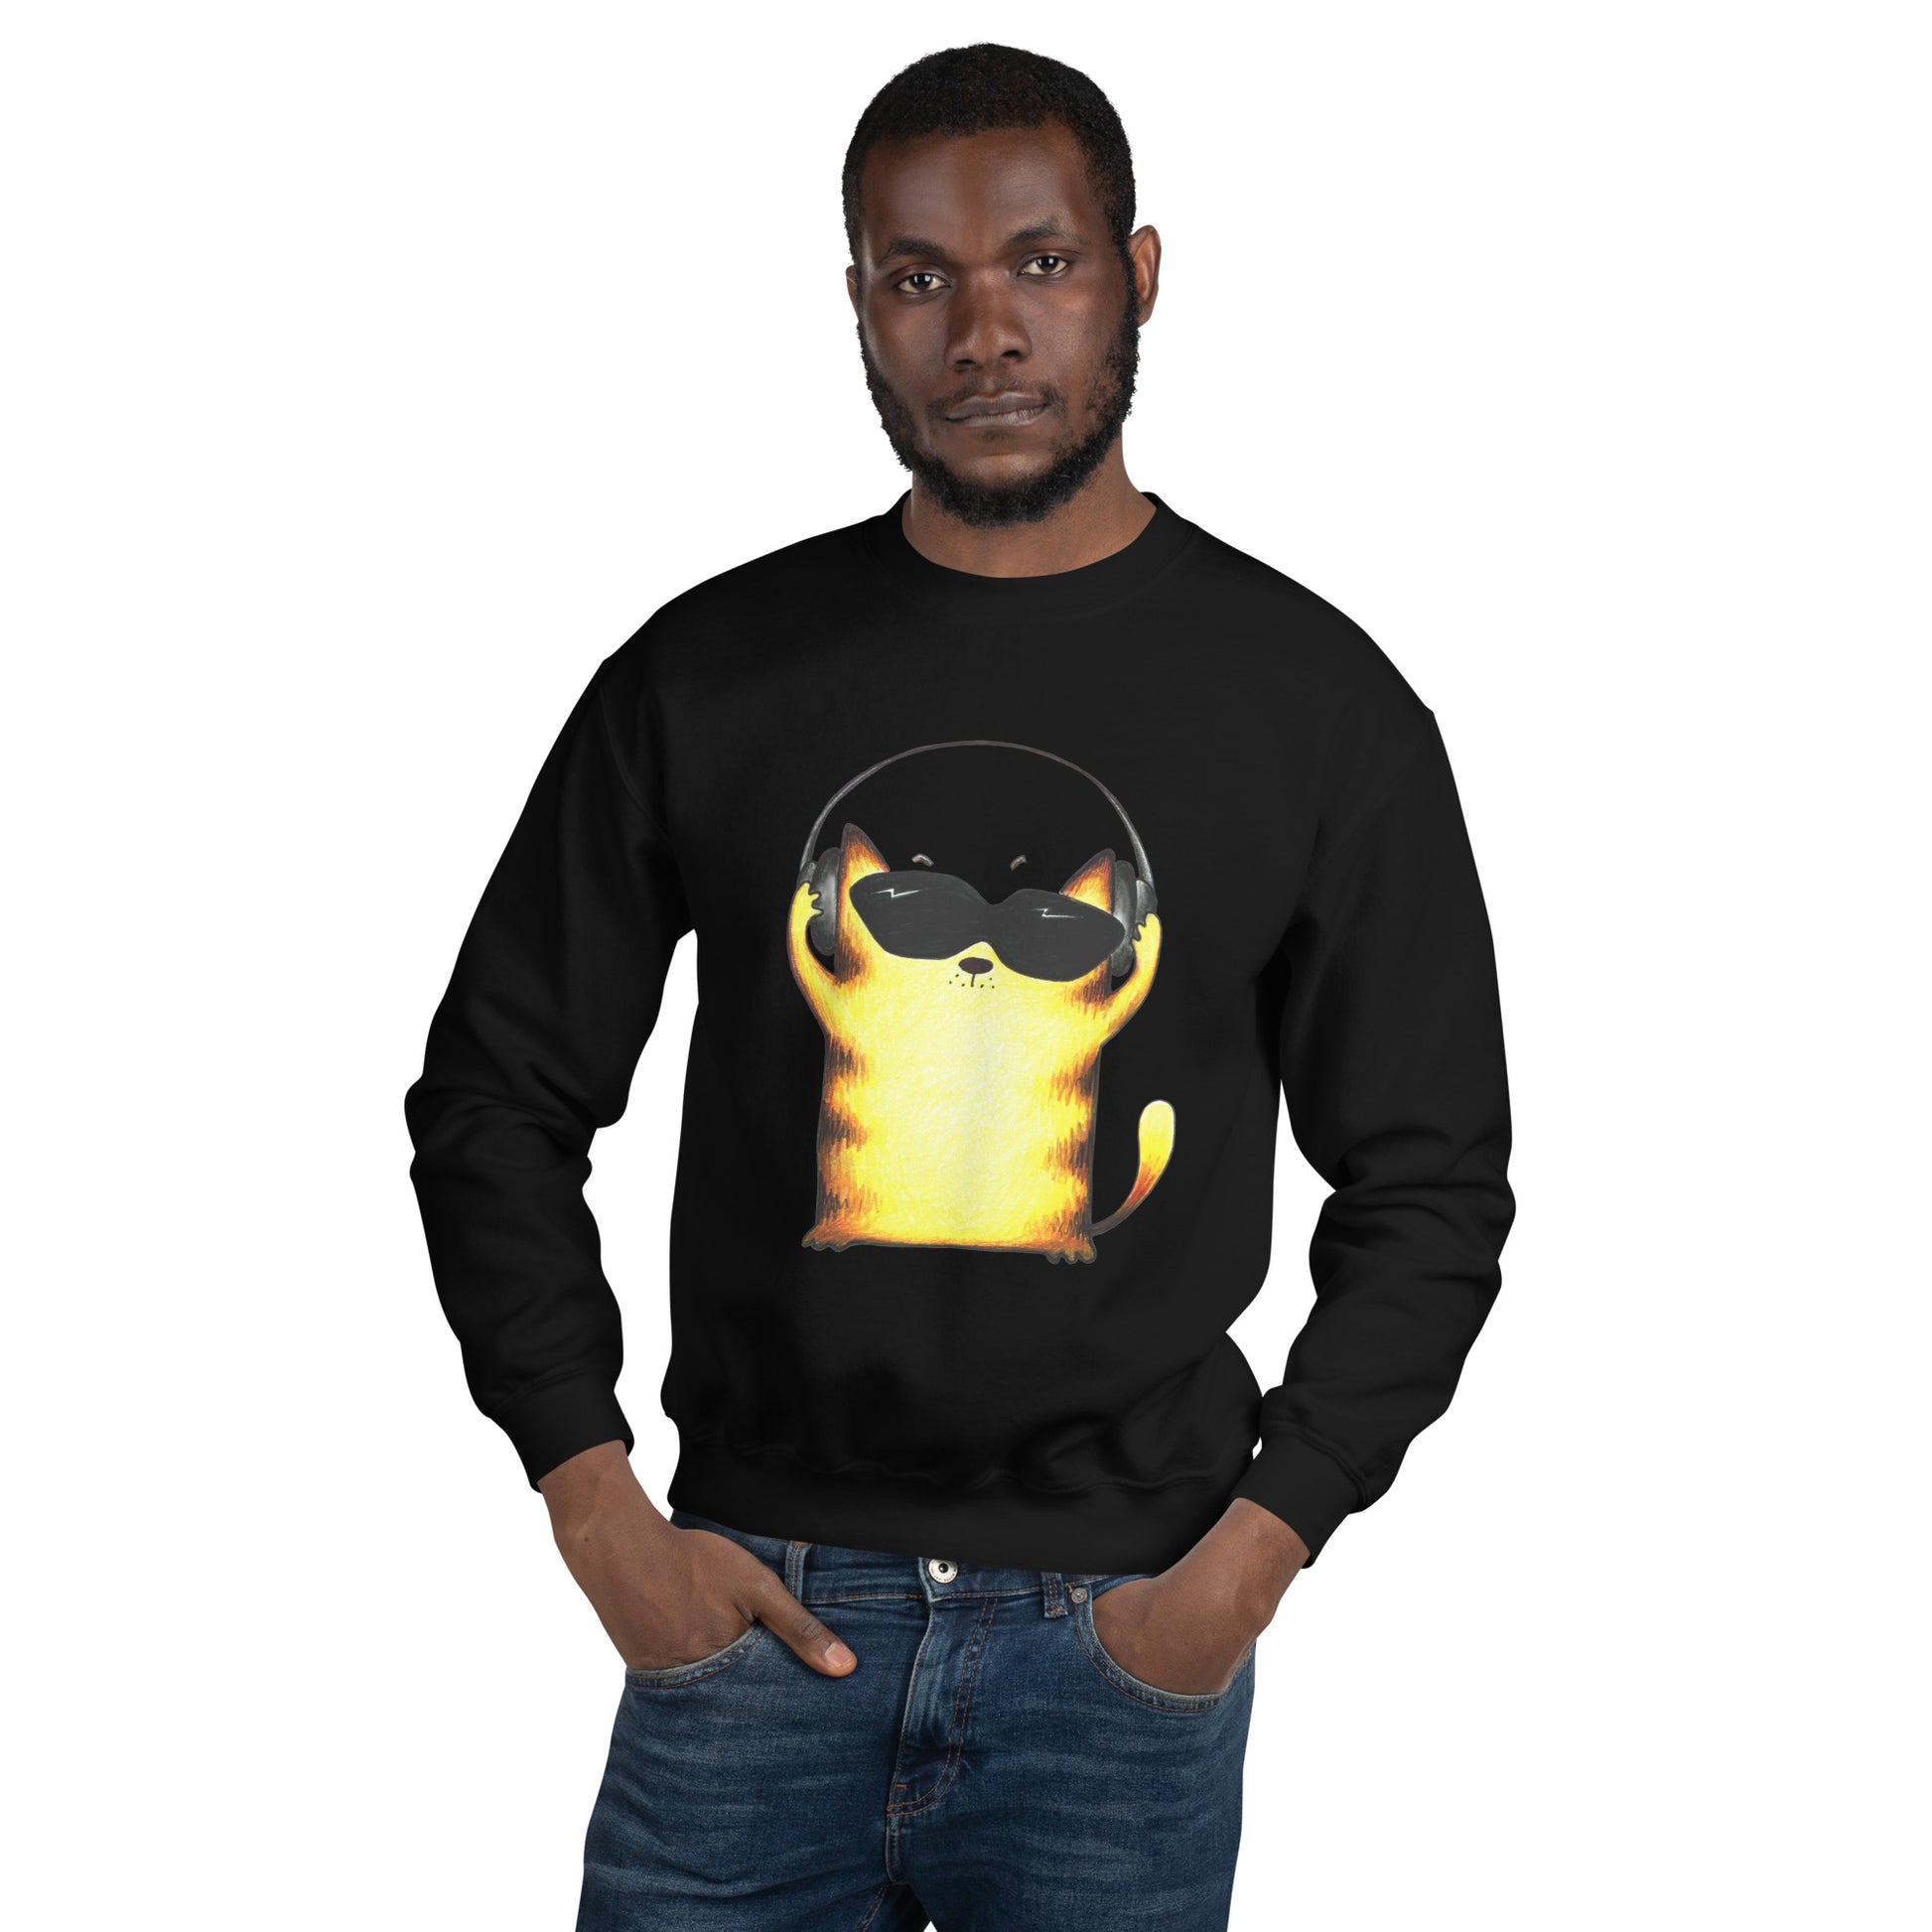 Black men's sweatshirt with yellow cats and headphones